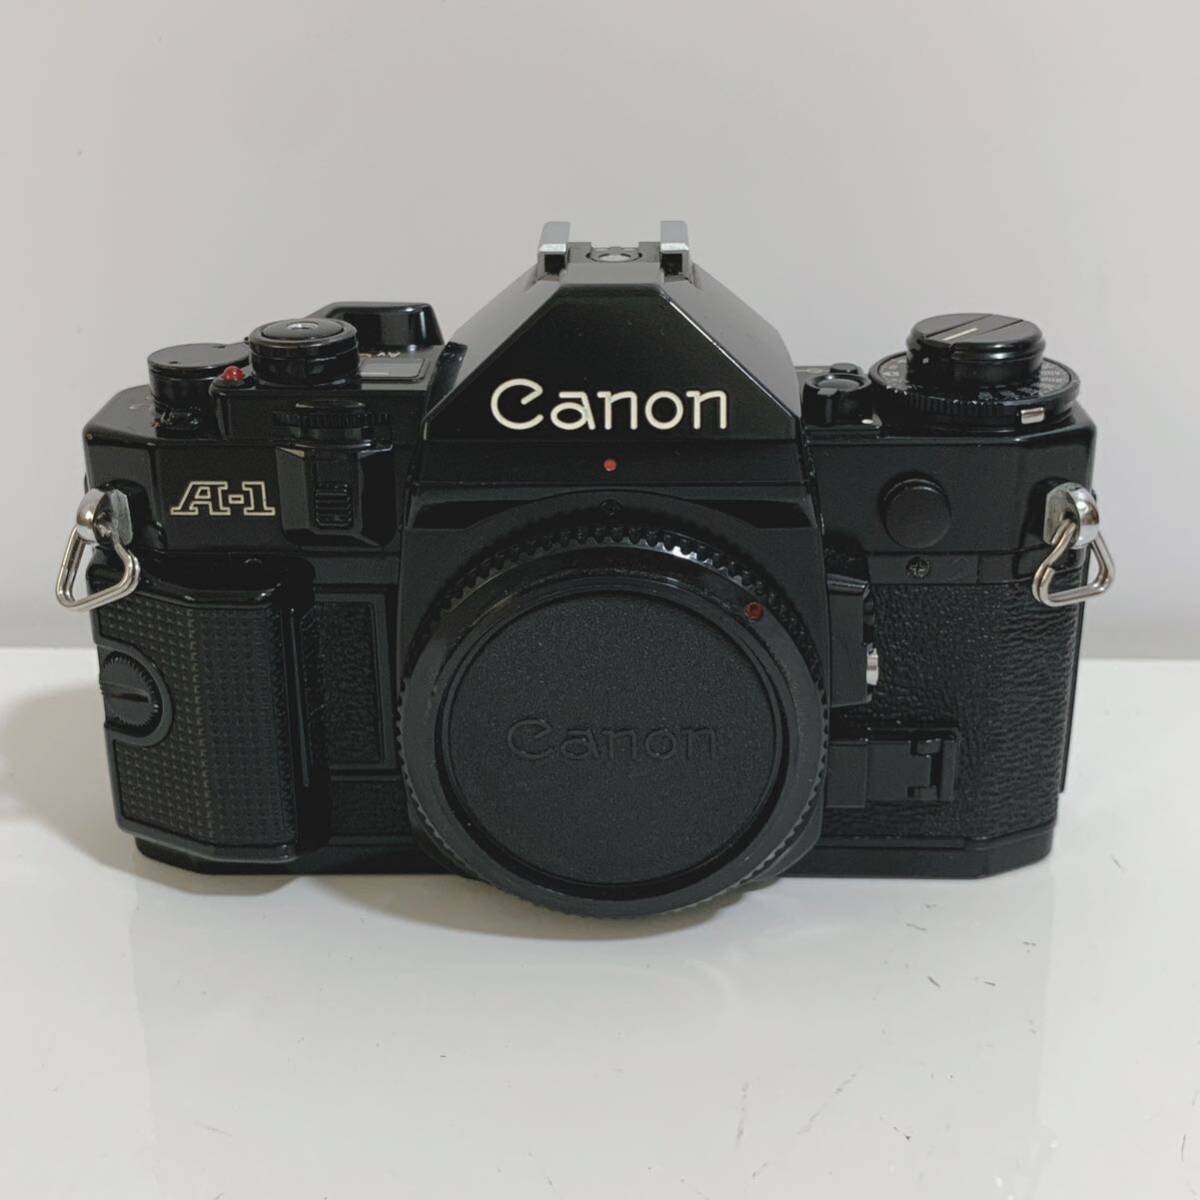 Canon キャノン A-1 フィルムカメラ 一眼レフカメラ 本体のみ ブラック ジャンク_画像1